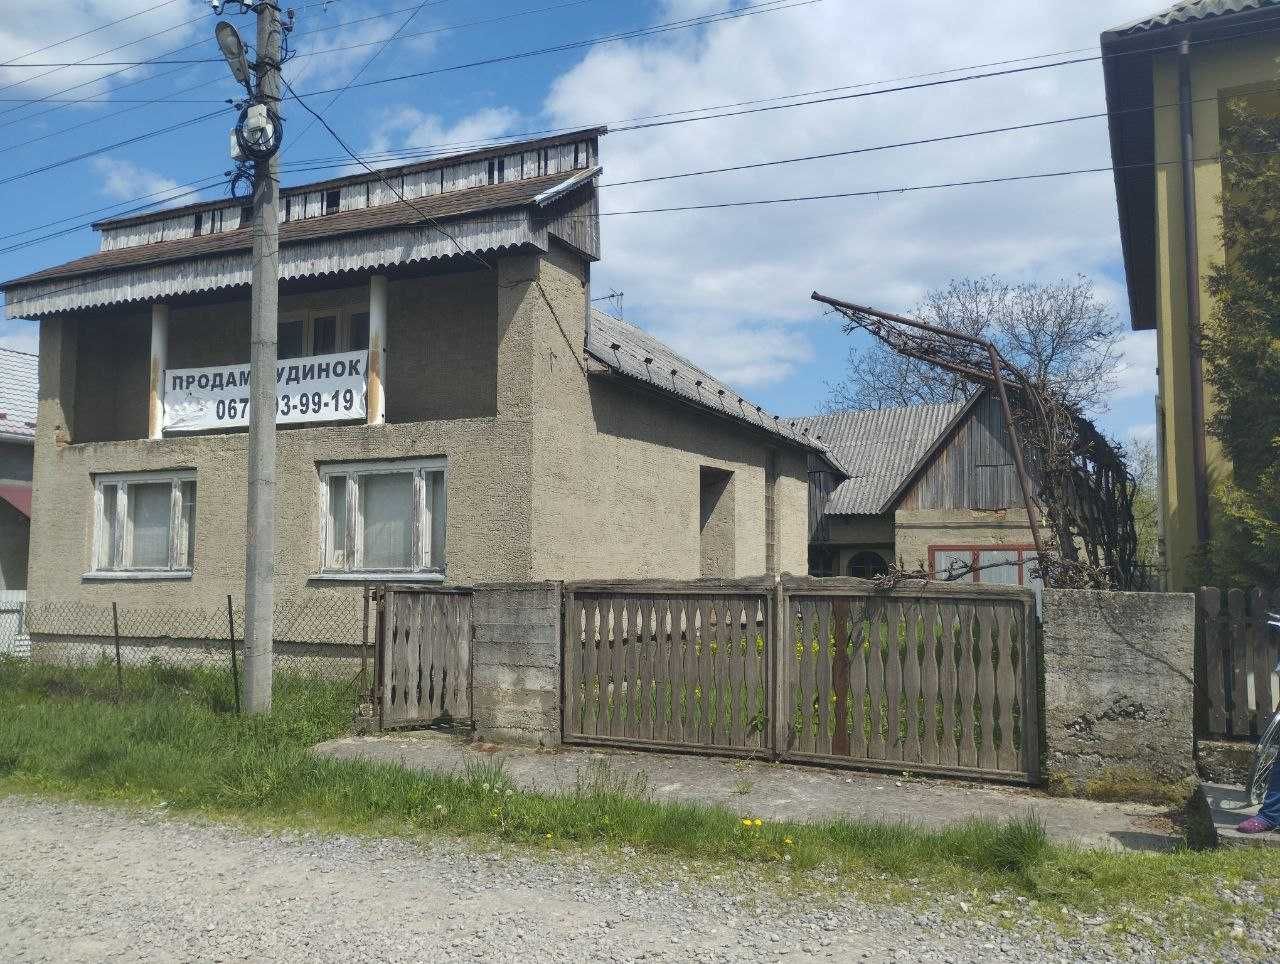 Продаж будинку в селищі Вишково.